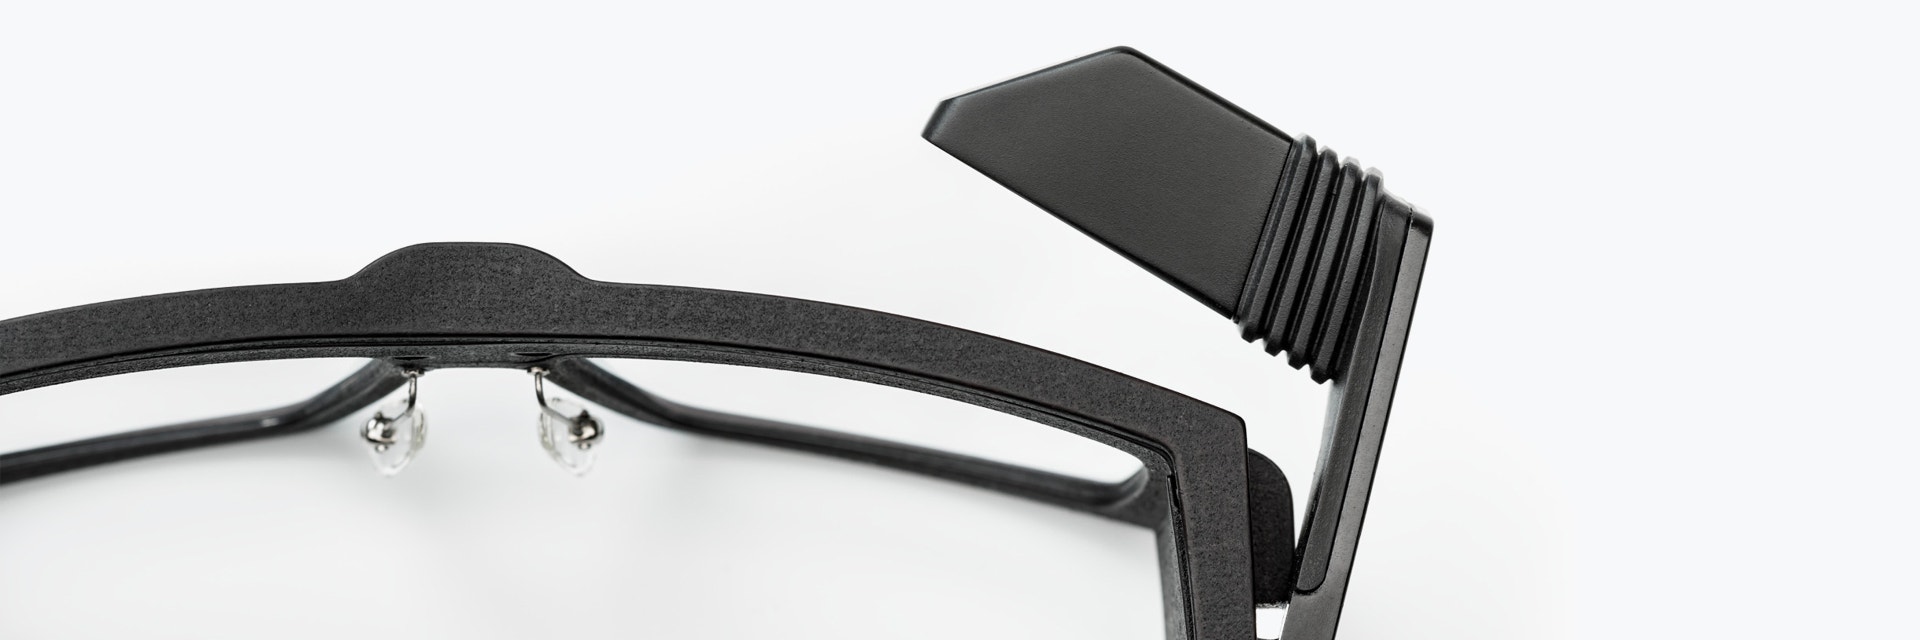 IristickZ1スマート安全メガネからの3軸ピボットのクローズアップ